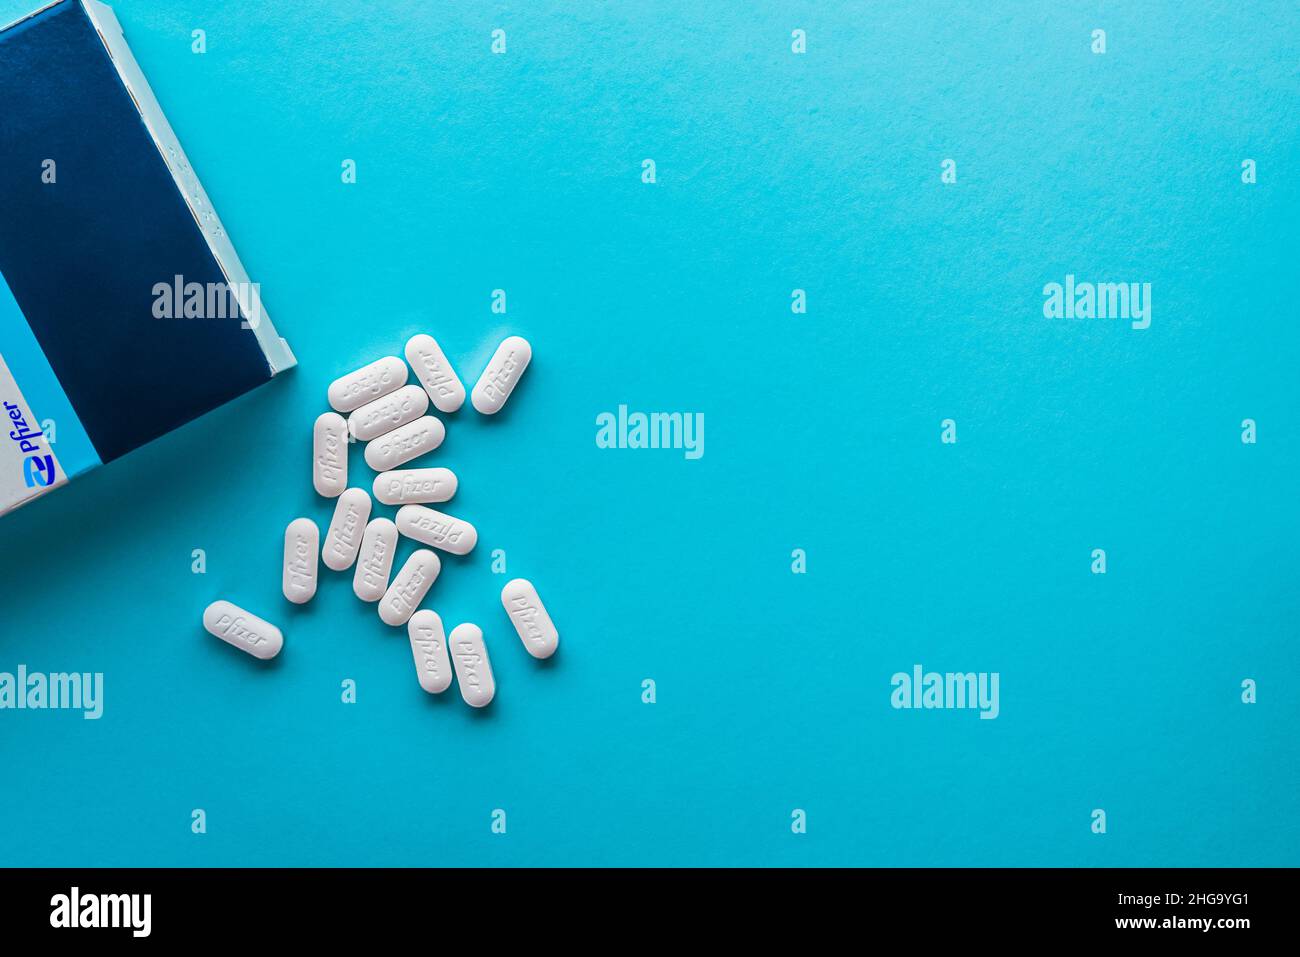 Izmir, Turkey -  November 5 2021: Pfizer Covid-19 Paxlovid treatment box and pills isolated on a blue background. Stock Photo